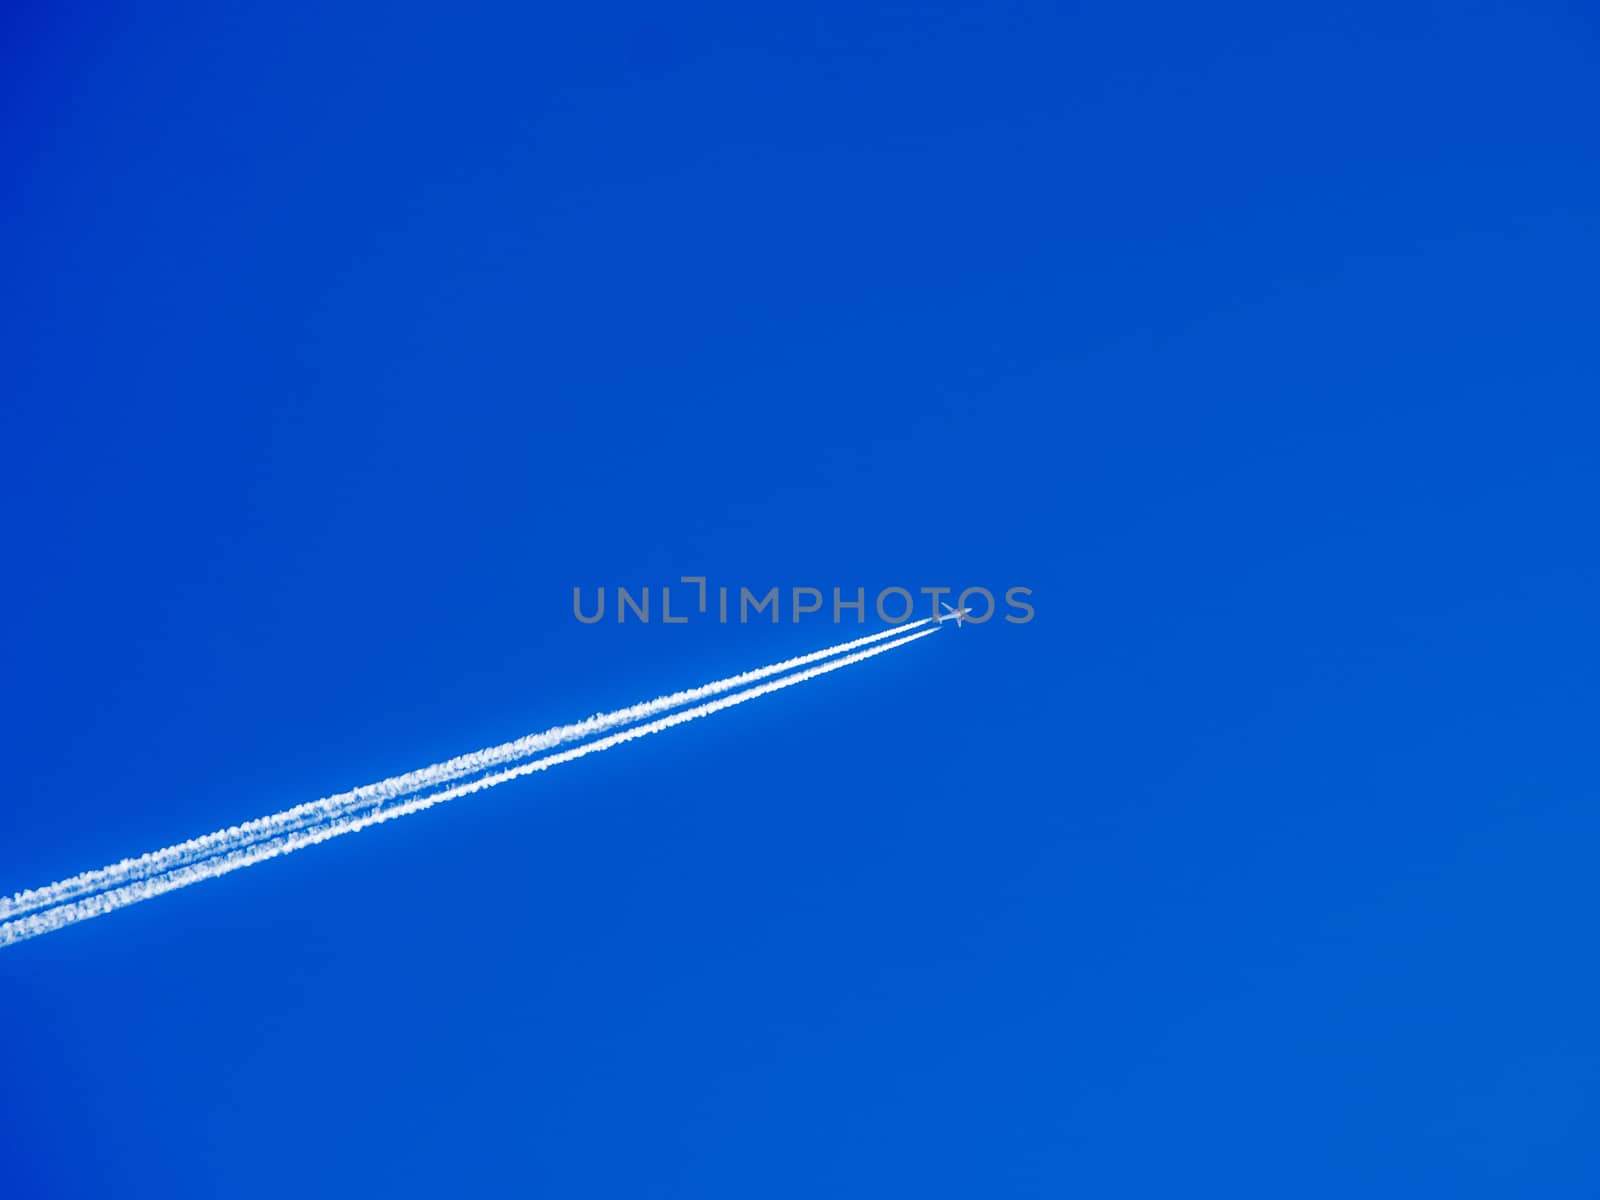 Plane in Blue Sky by danieldep